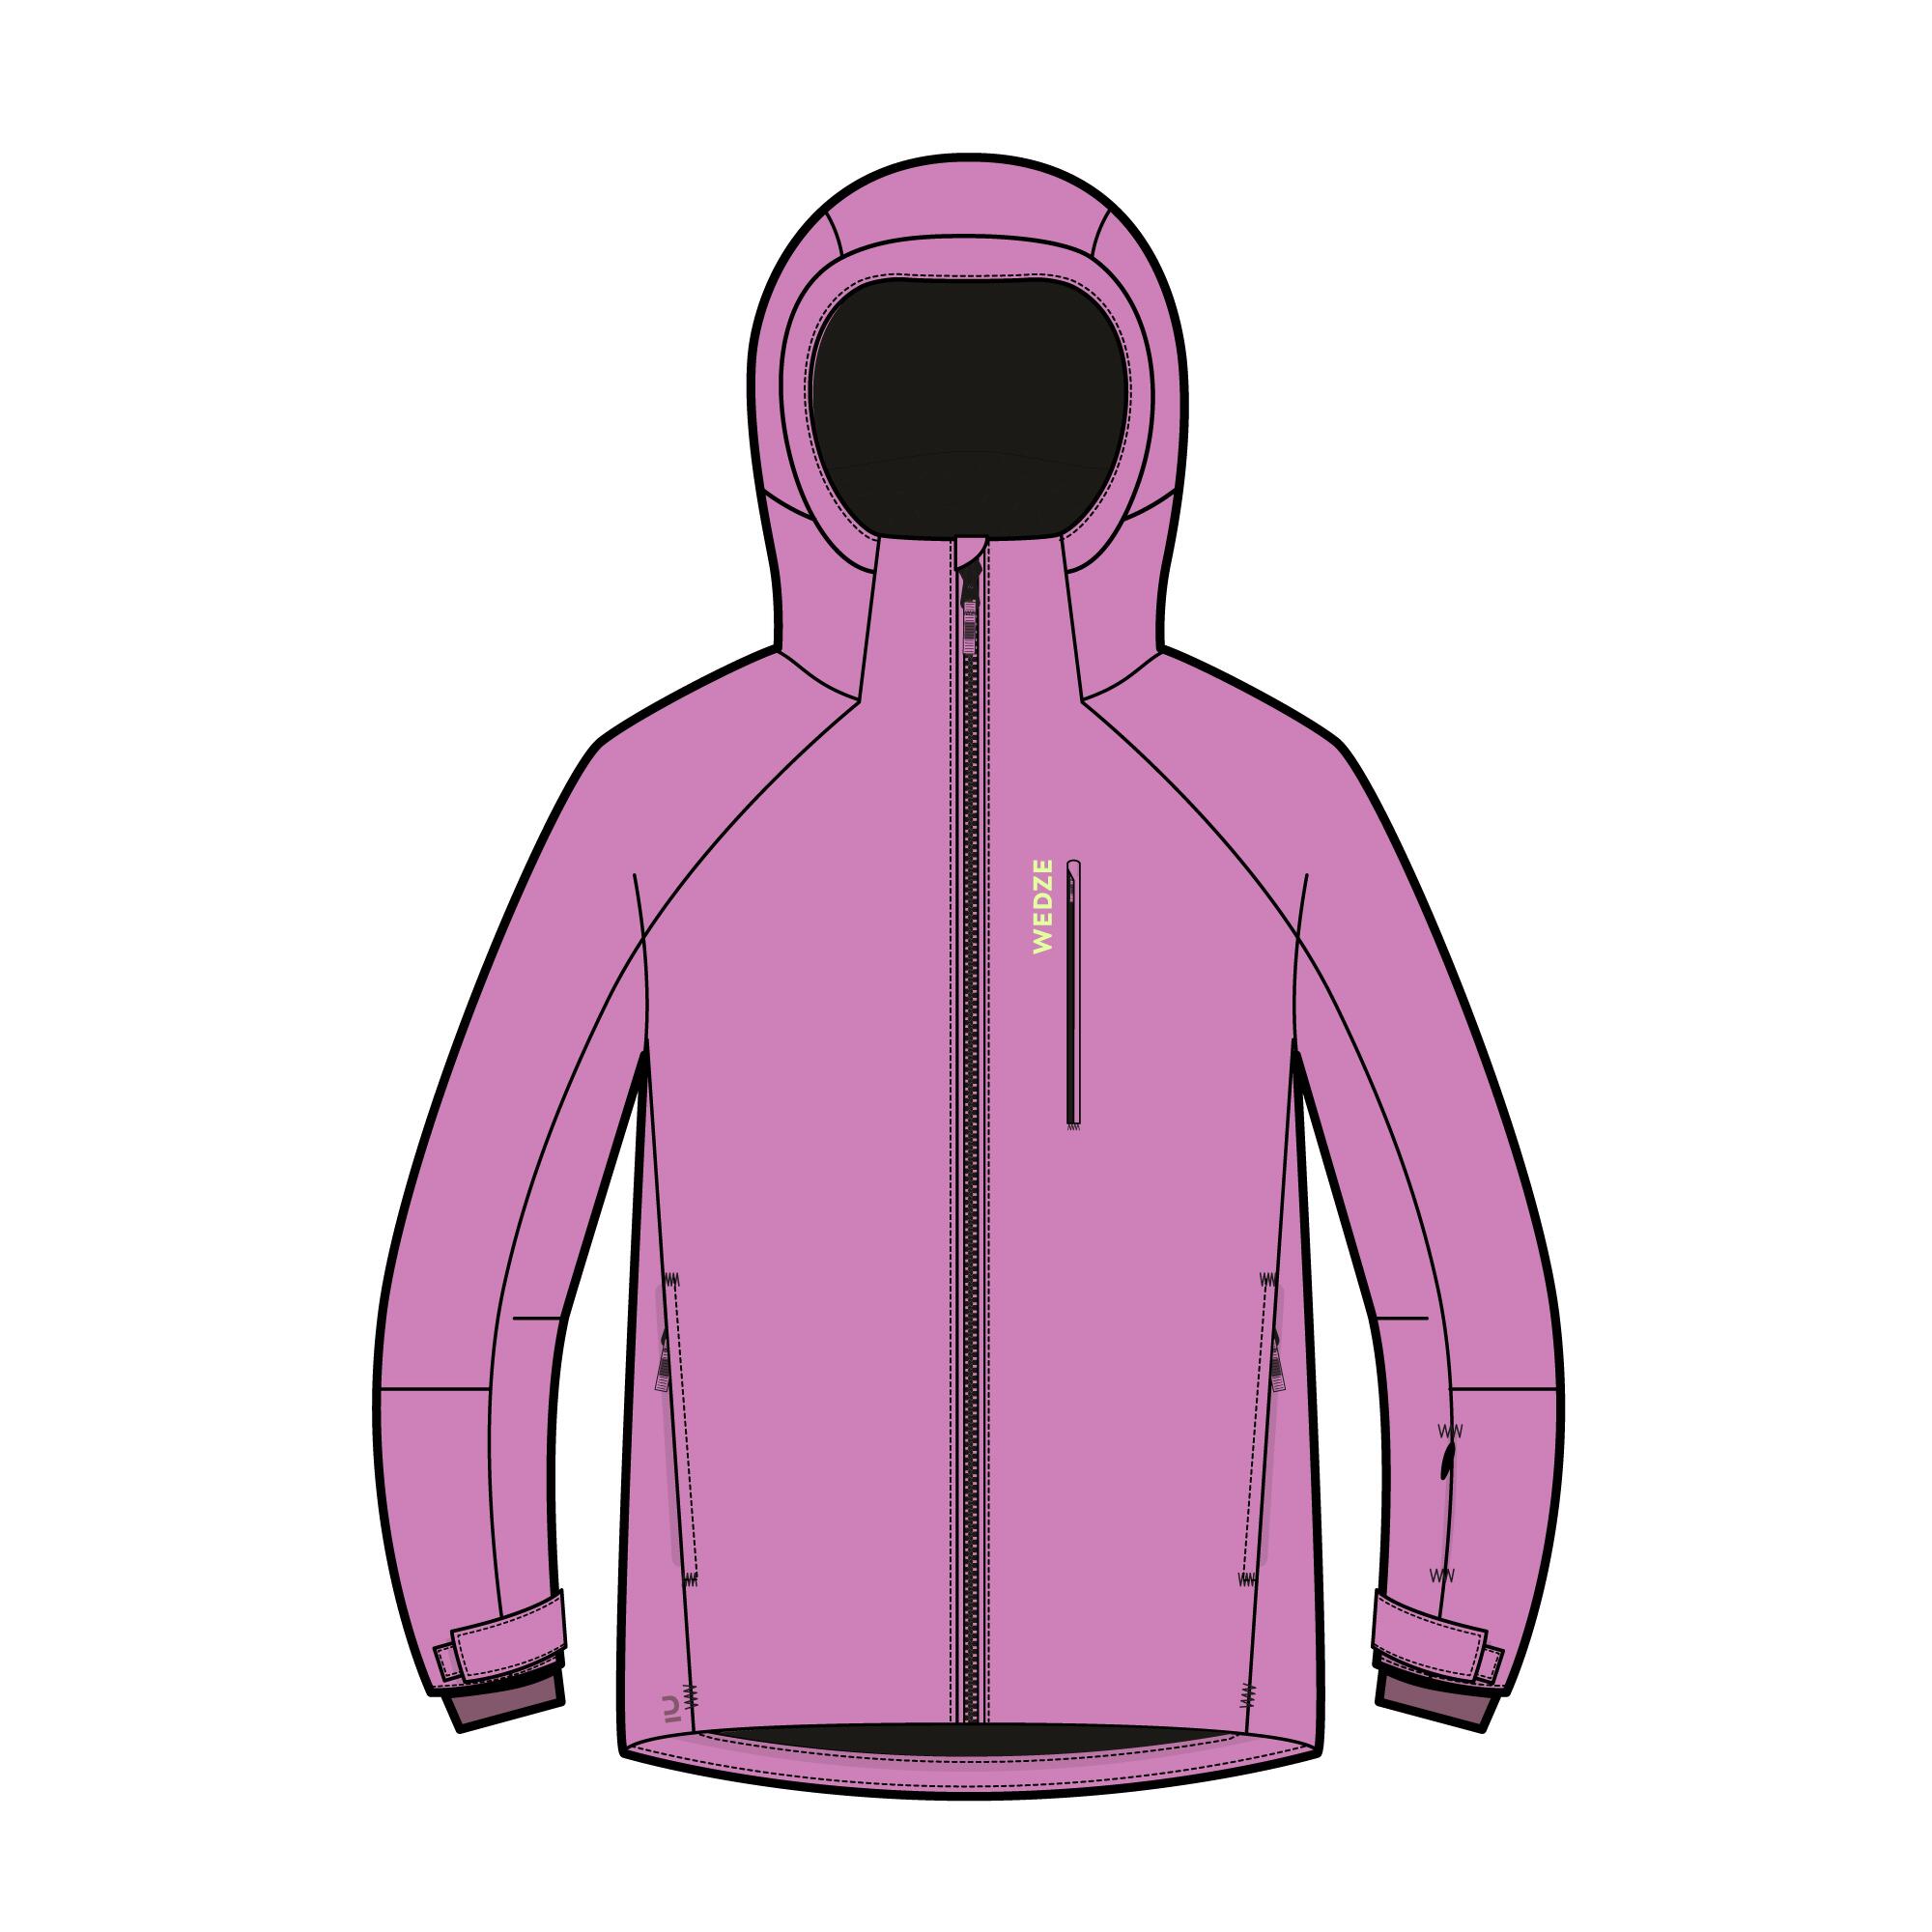 Manteau d'hiver imperméable enfant – ski 550 rose - WEDZE